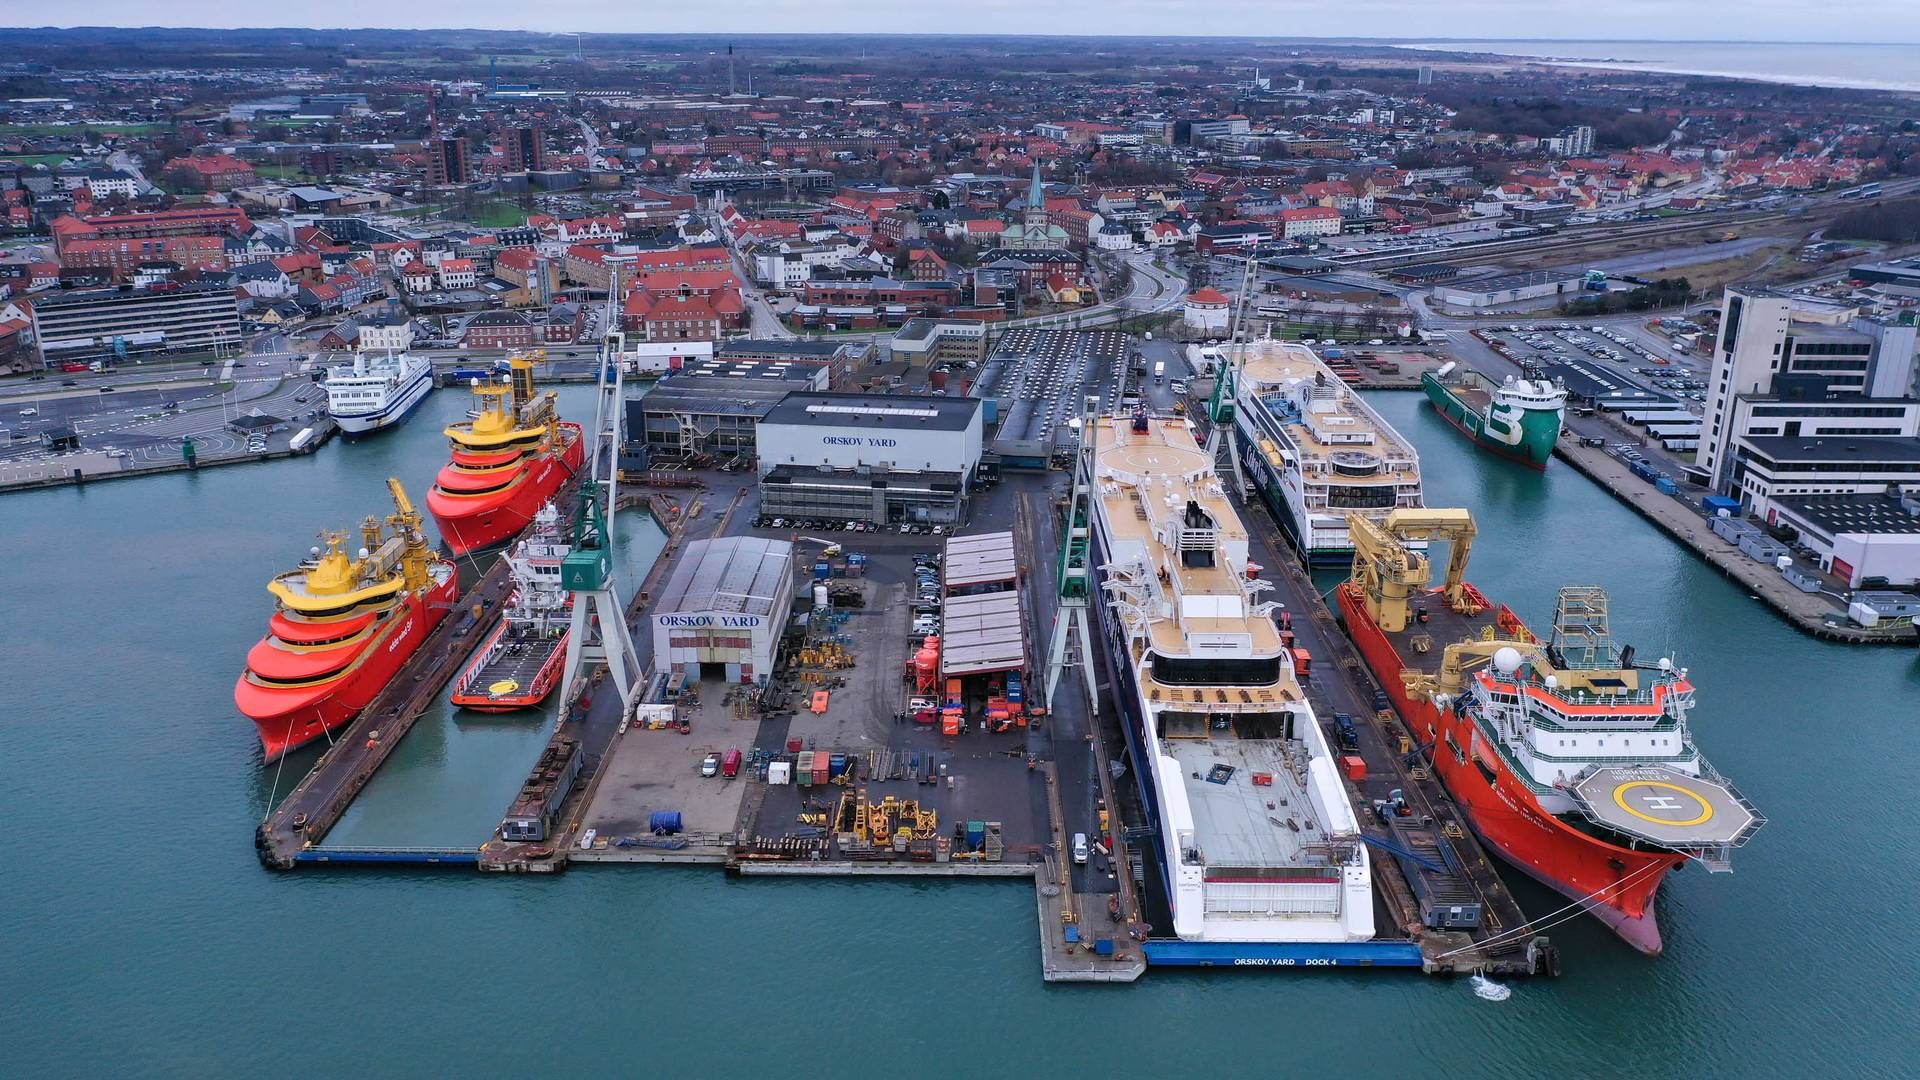 Orskov Yard ligger i Frederikshavn og fokuserer på reparationer og vedligehold af skibe. | Foto: Orskov Yard